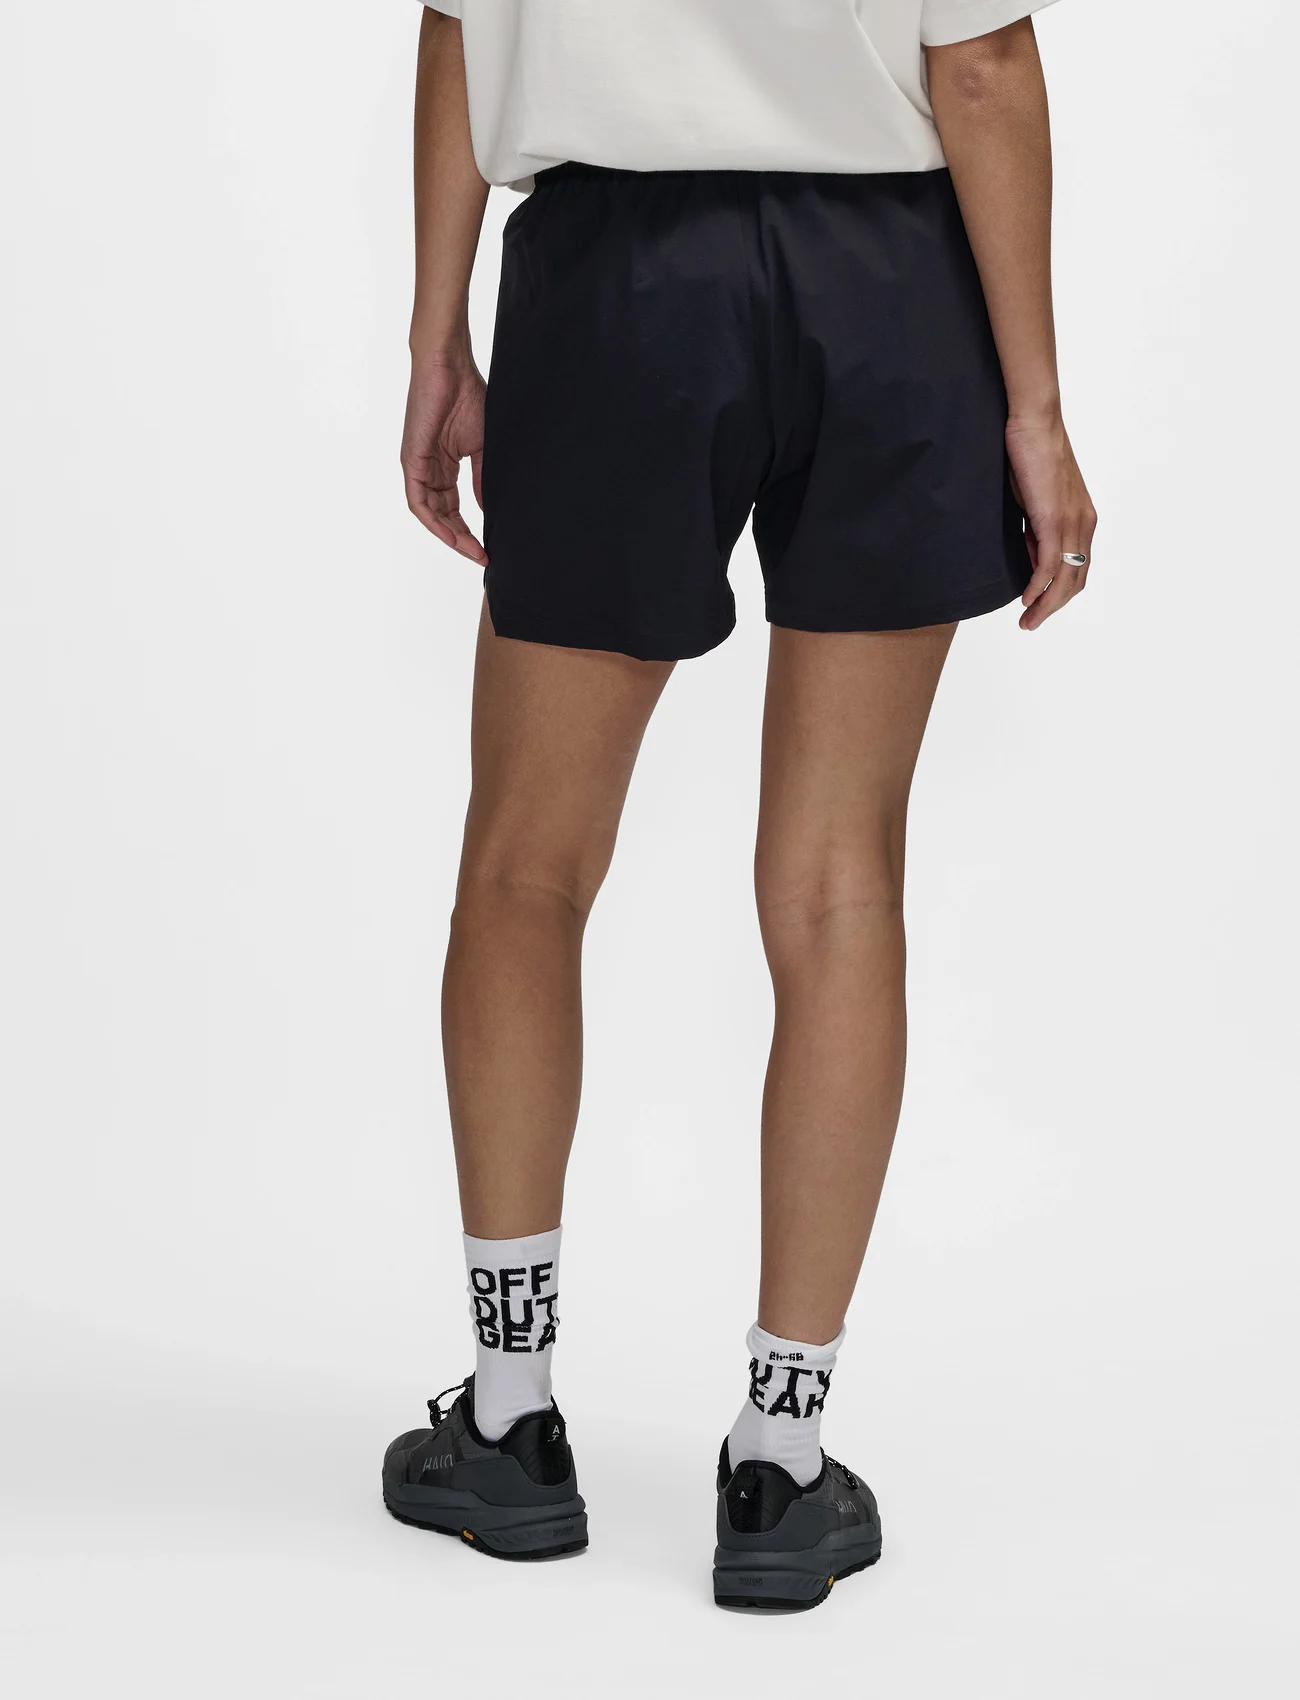 HALO - HALO SHORTS - training shorts - black - 4